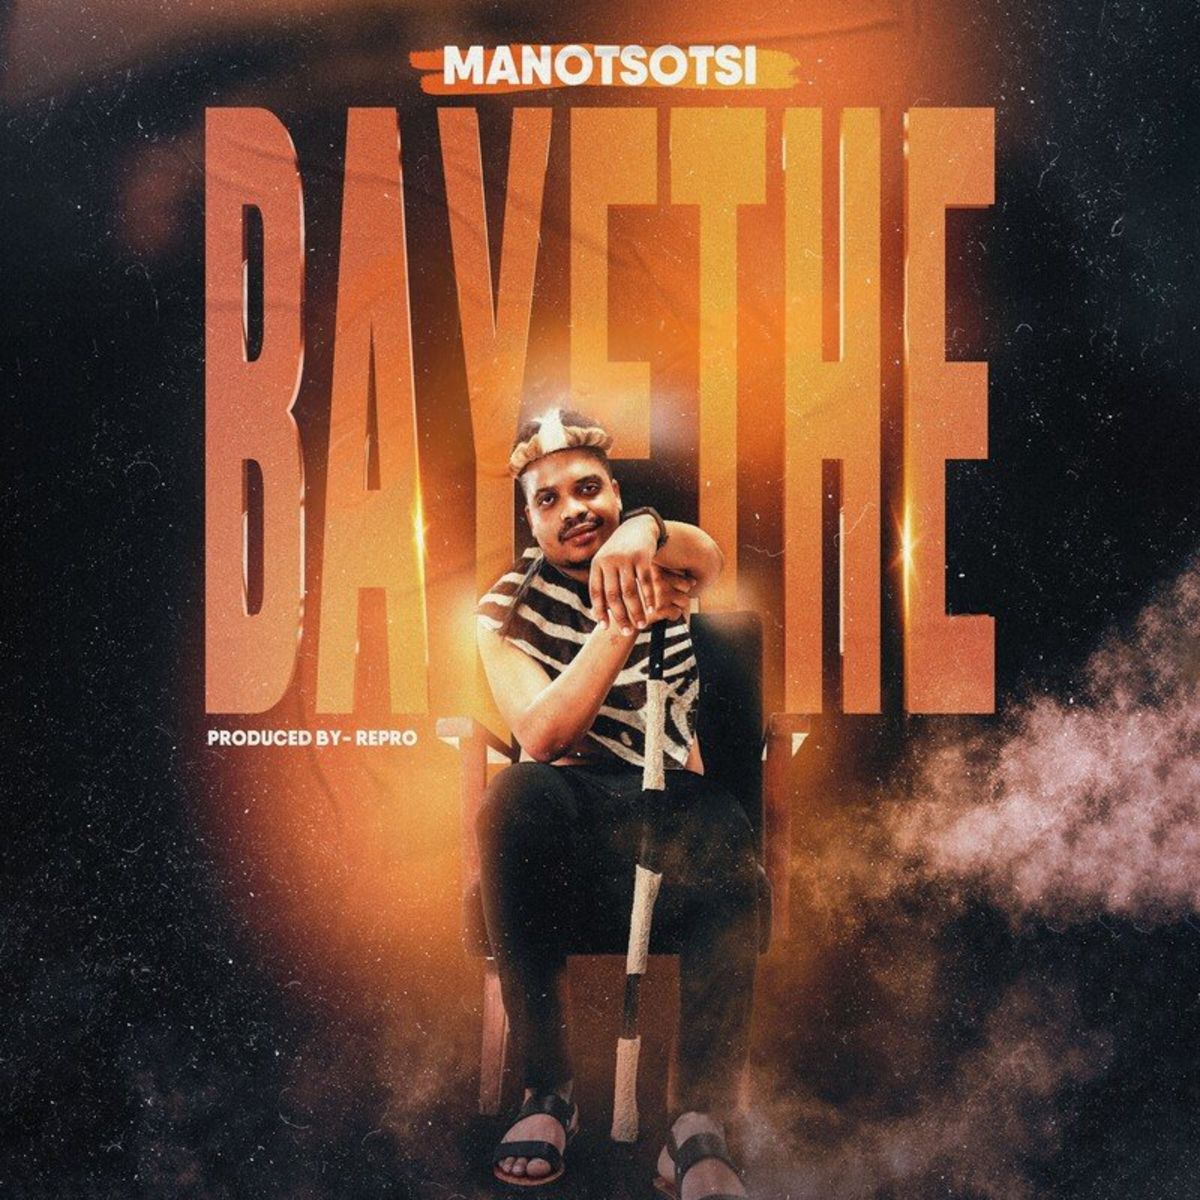 Mano Tsotsi – Bayethe